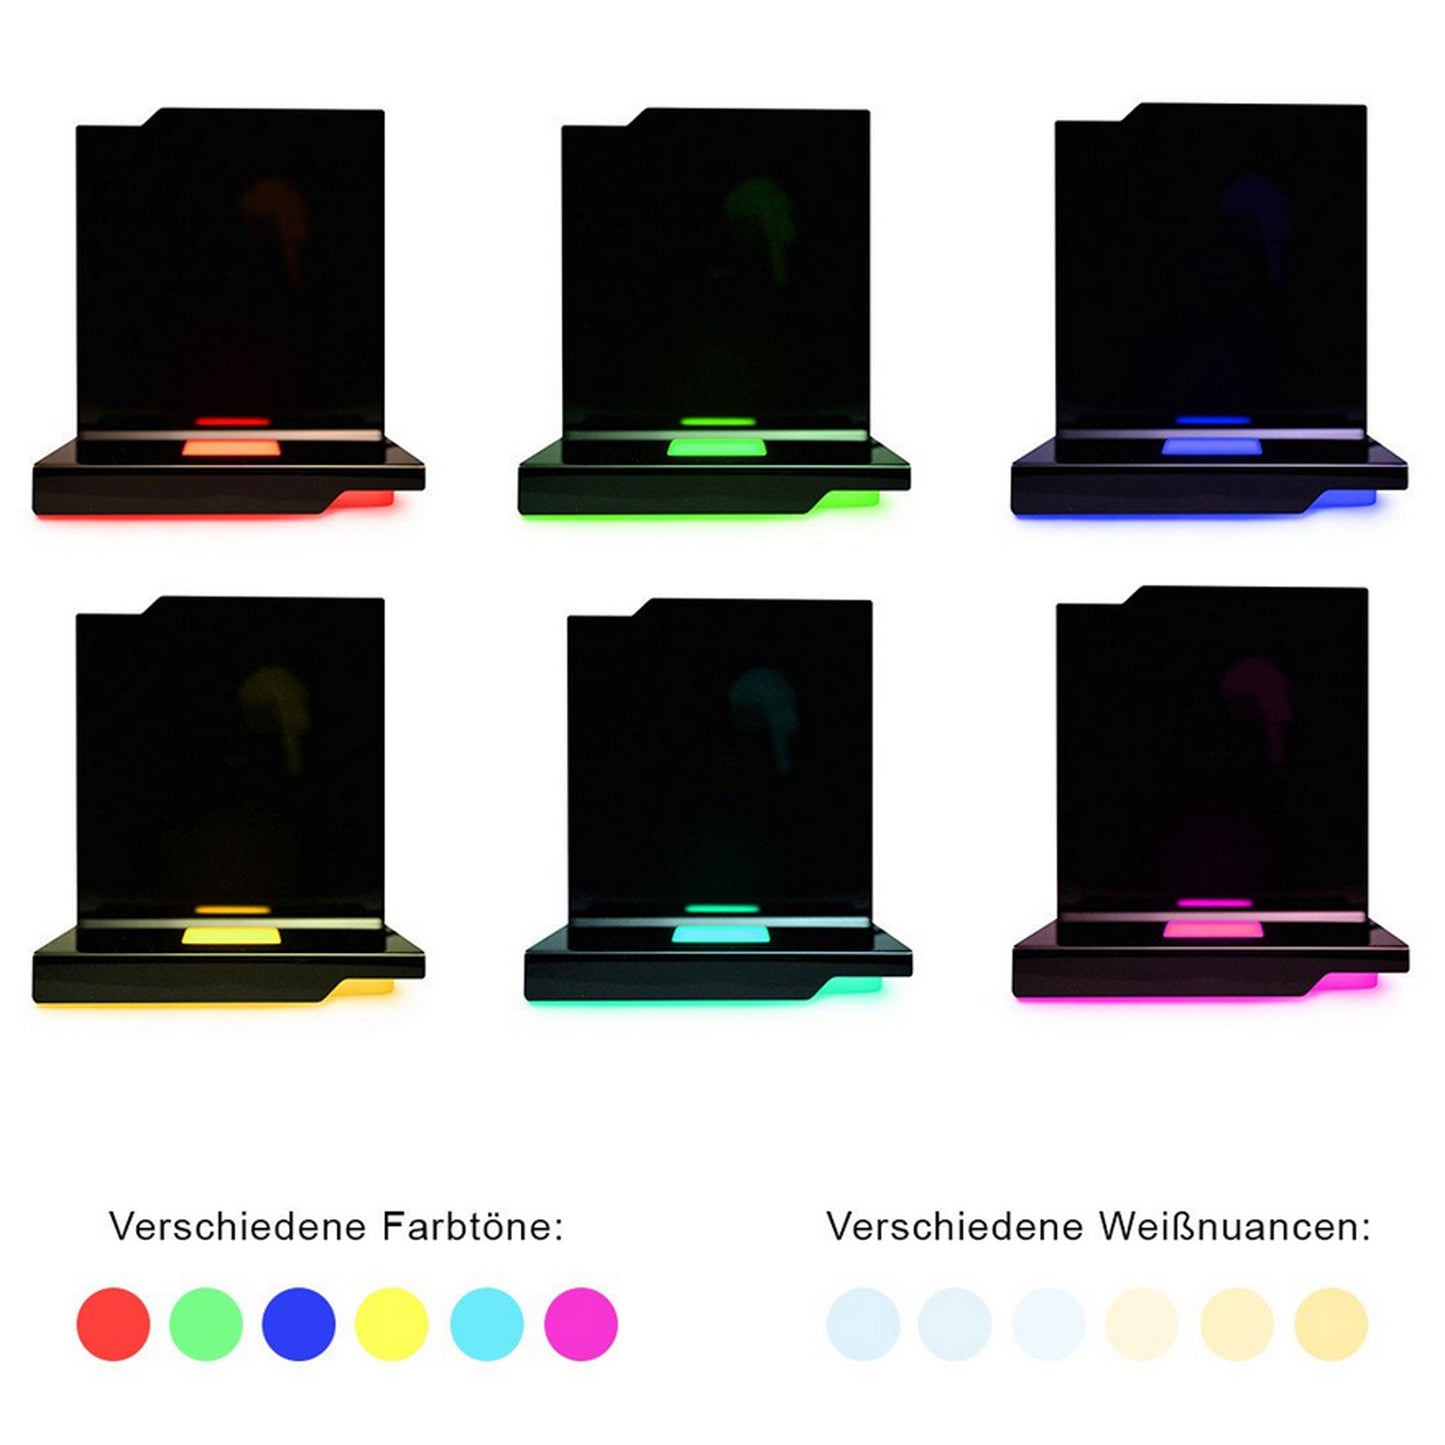 3D Fotos in Glas - Nano Hochformat mit Kantate Beleuchtungselement